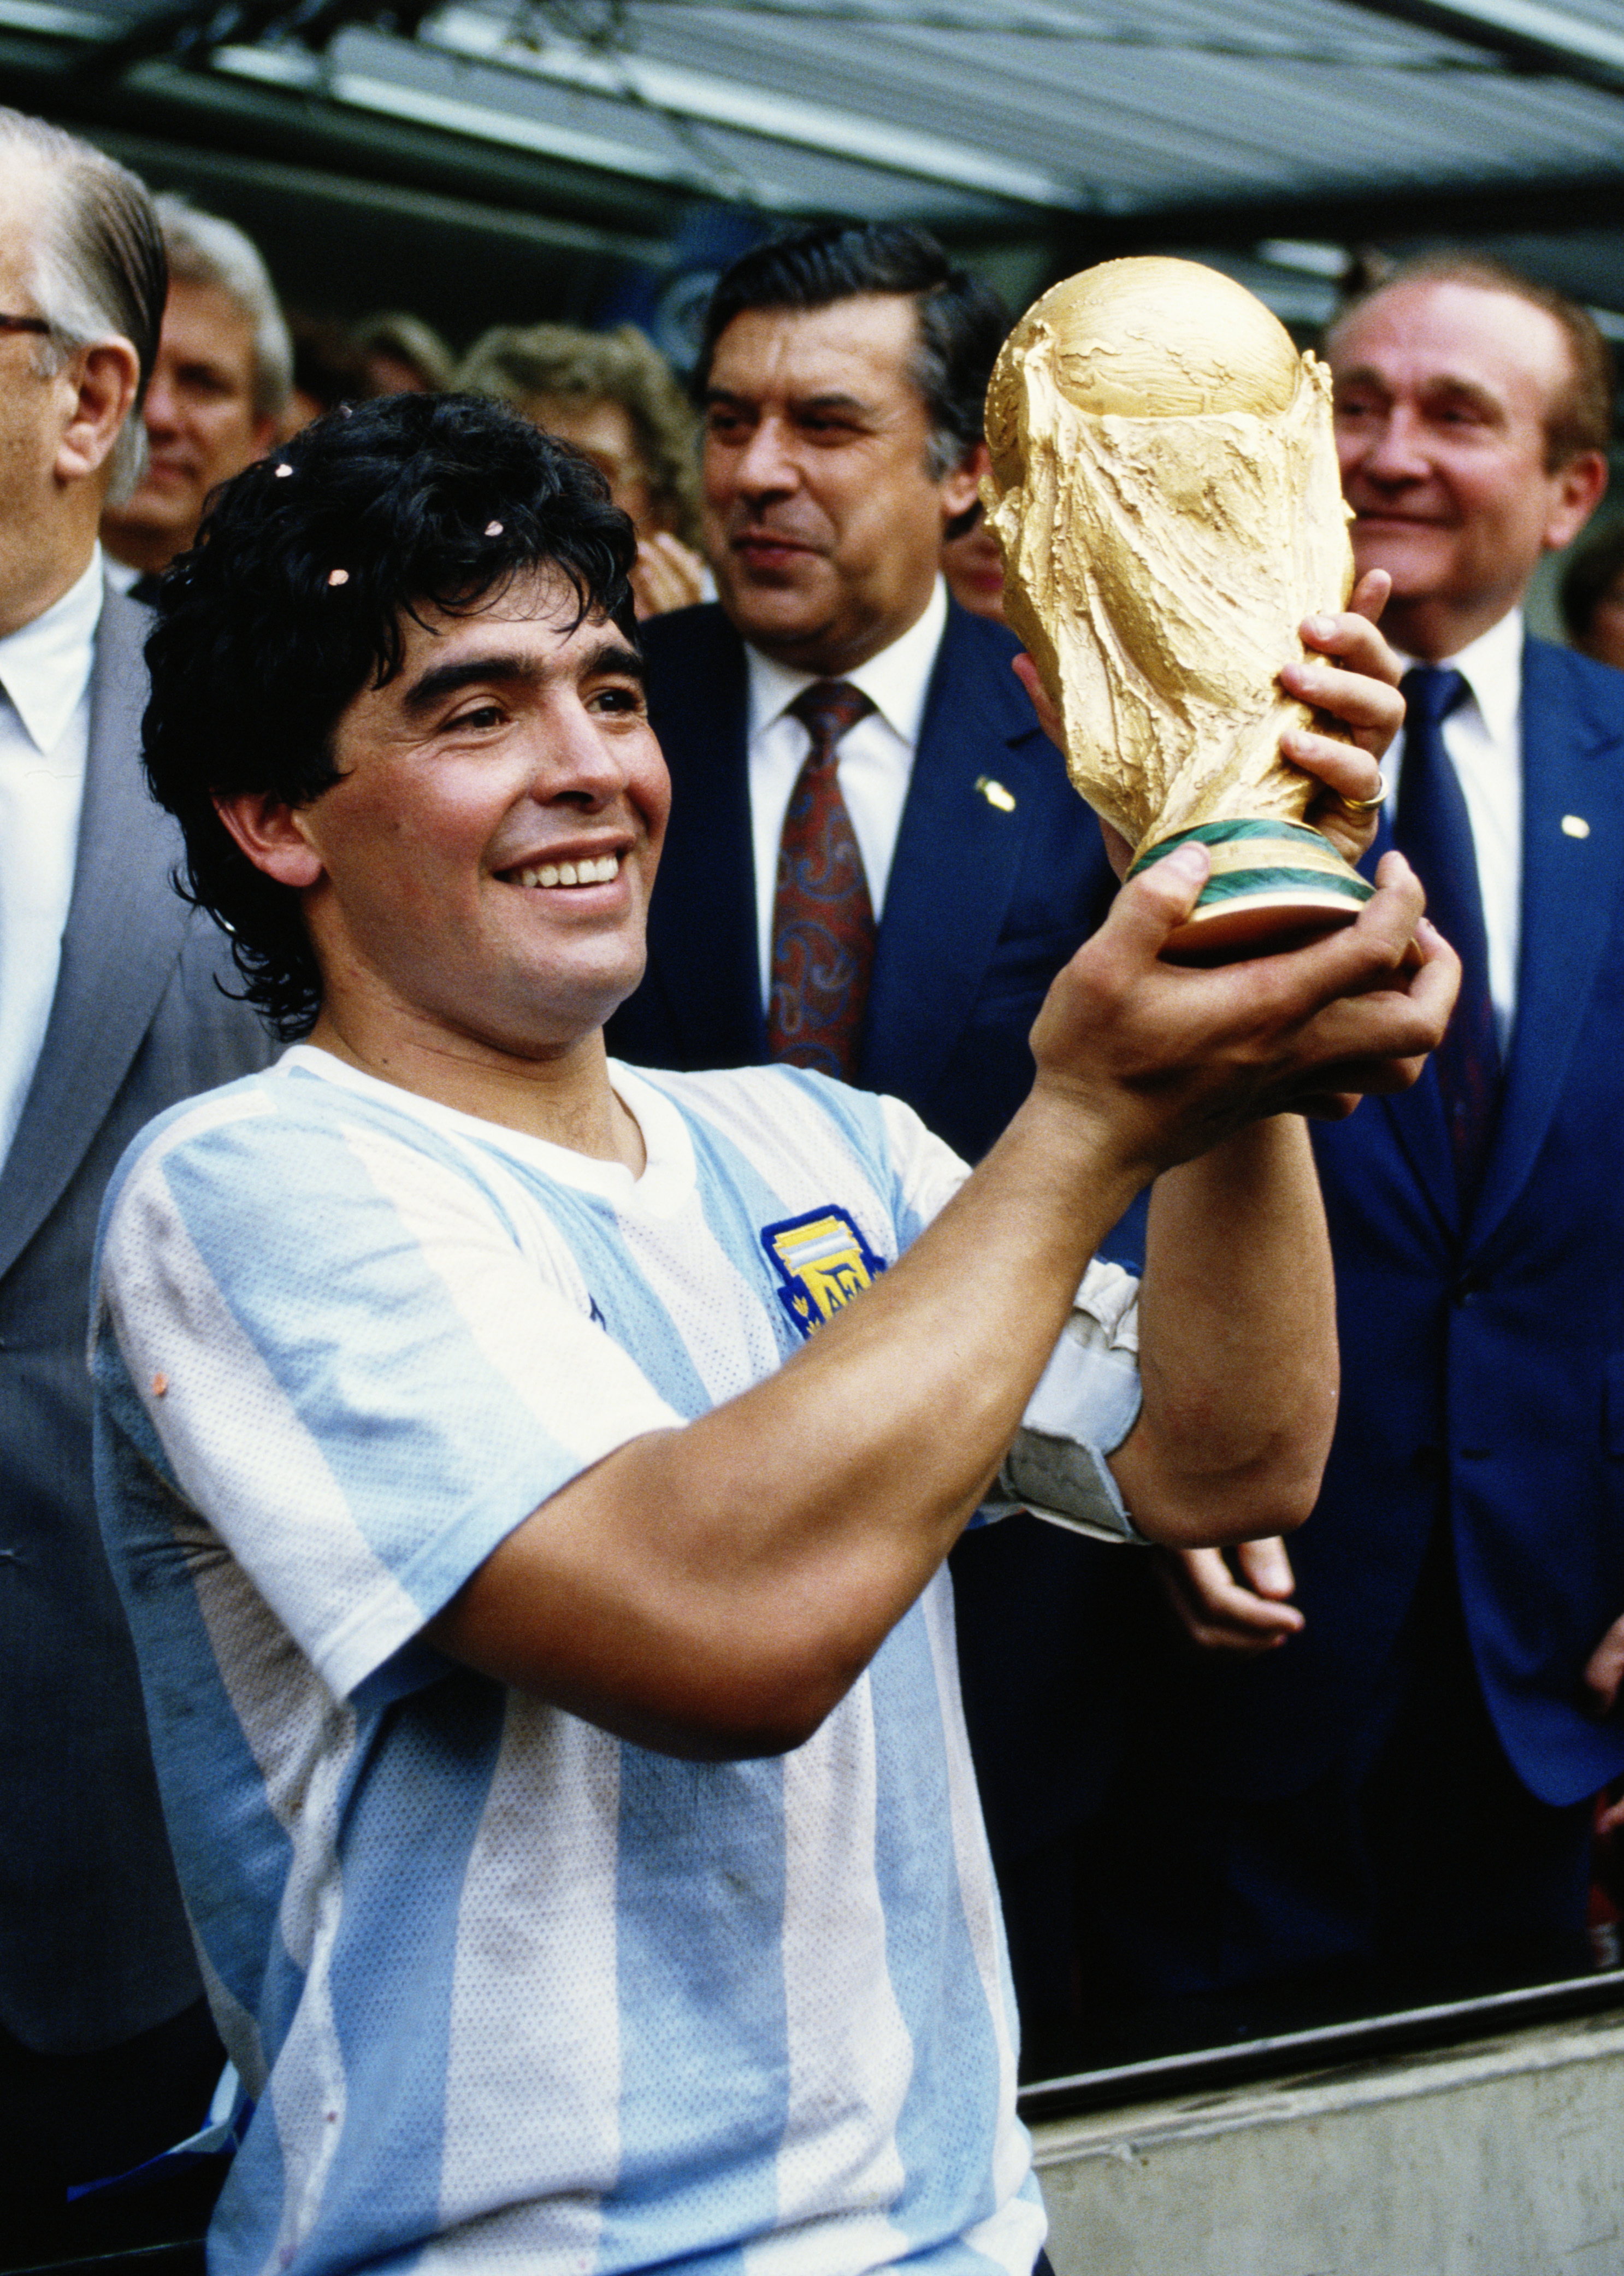 Maradona gilt weithin als einer der größten Fußballgrößen der Welt